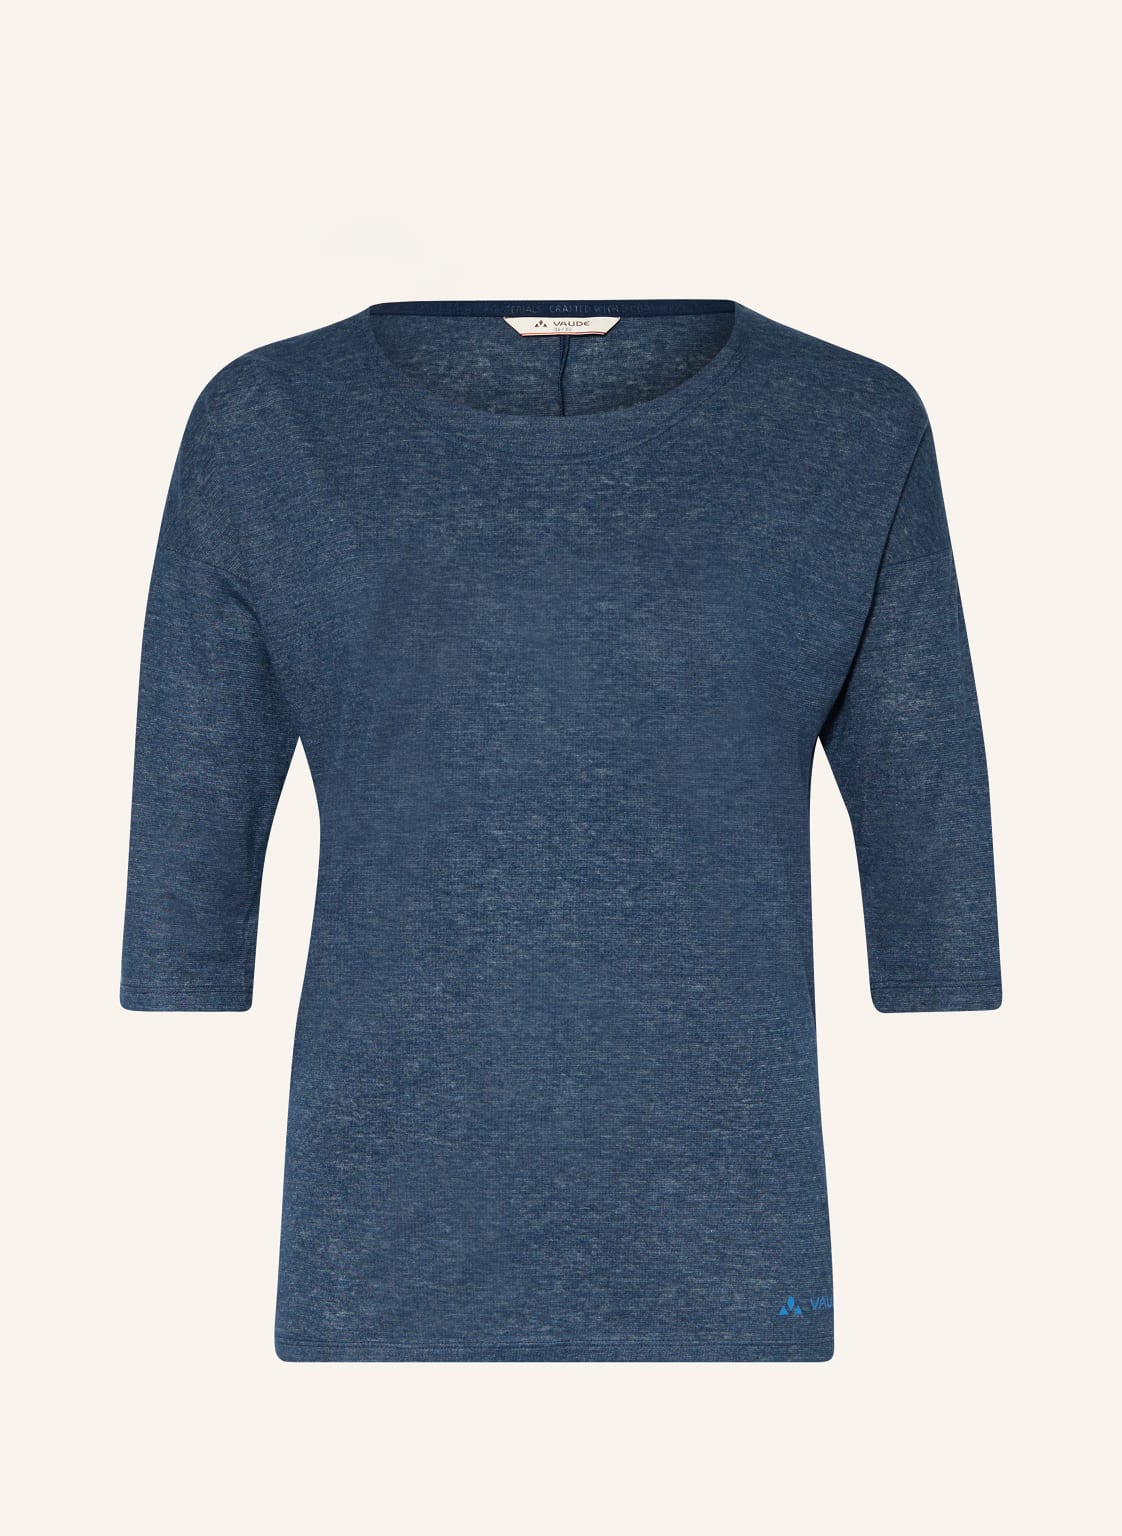 Vaude T-Shirt Neyland Mit 3/4-Arm blau von Vaude